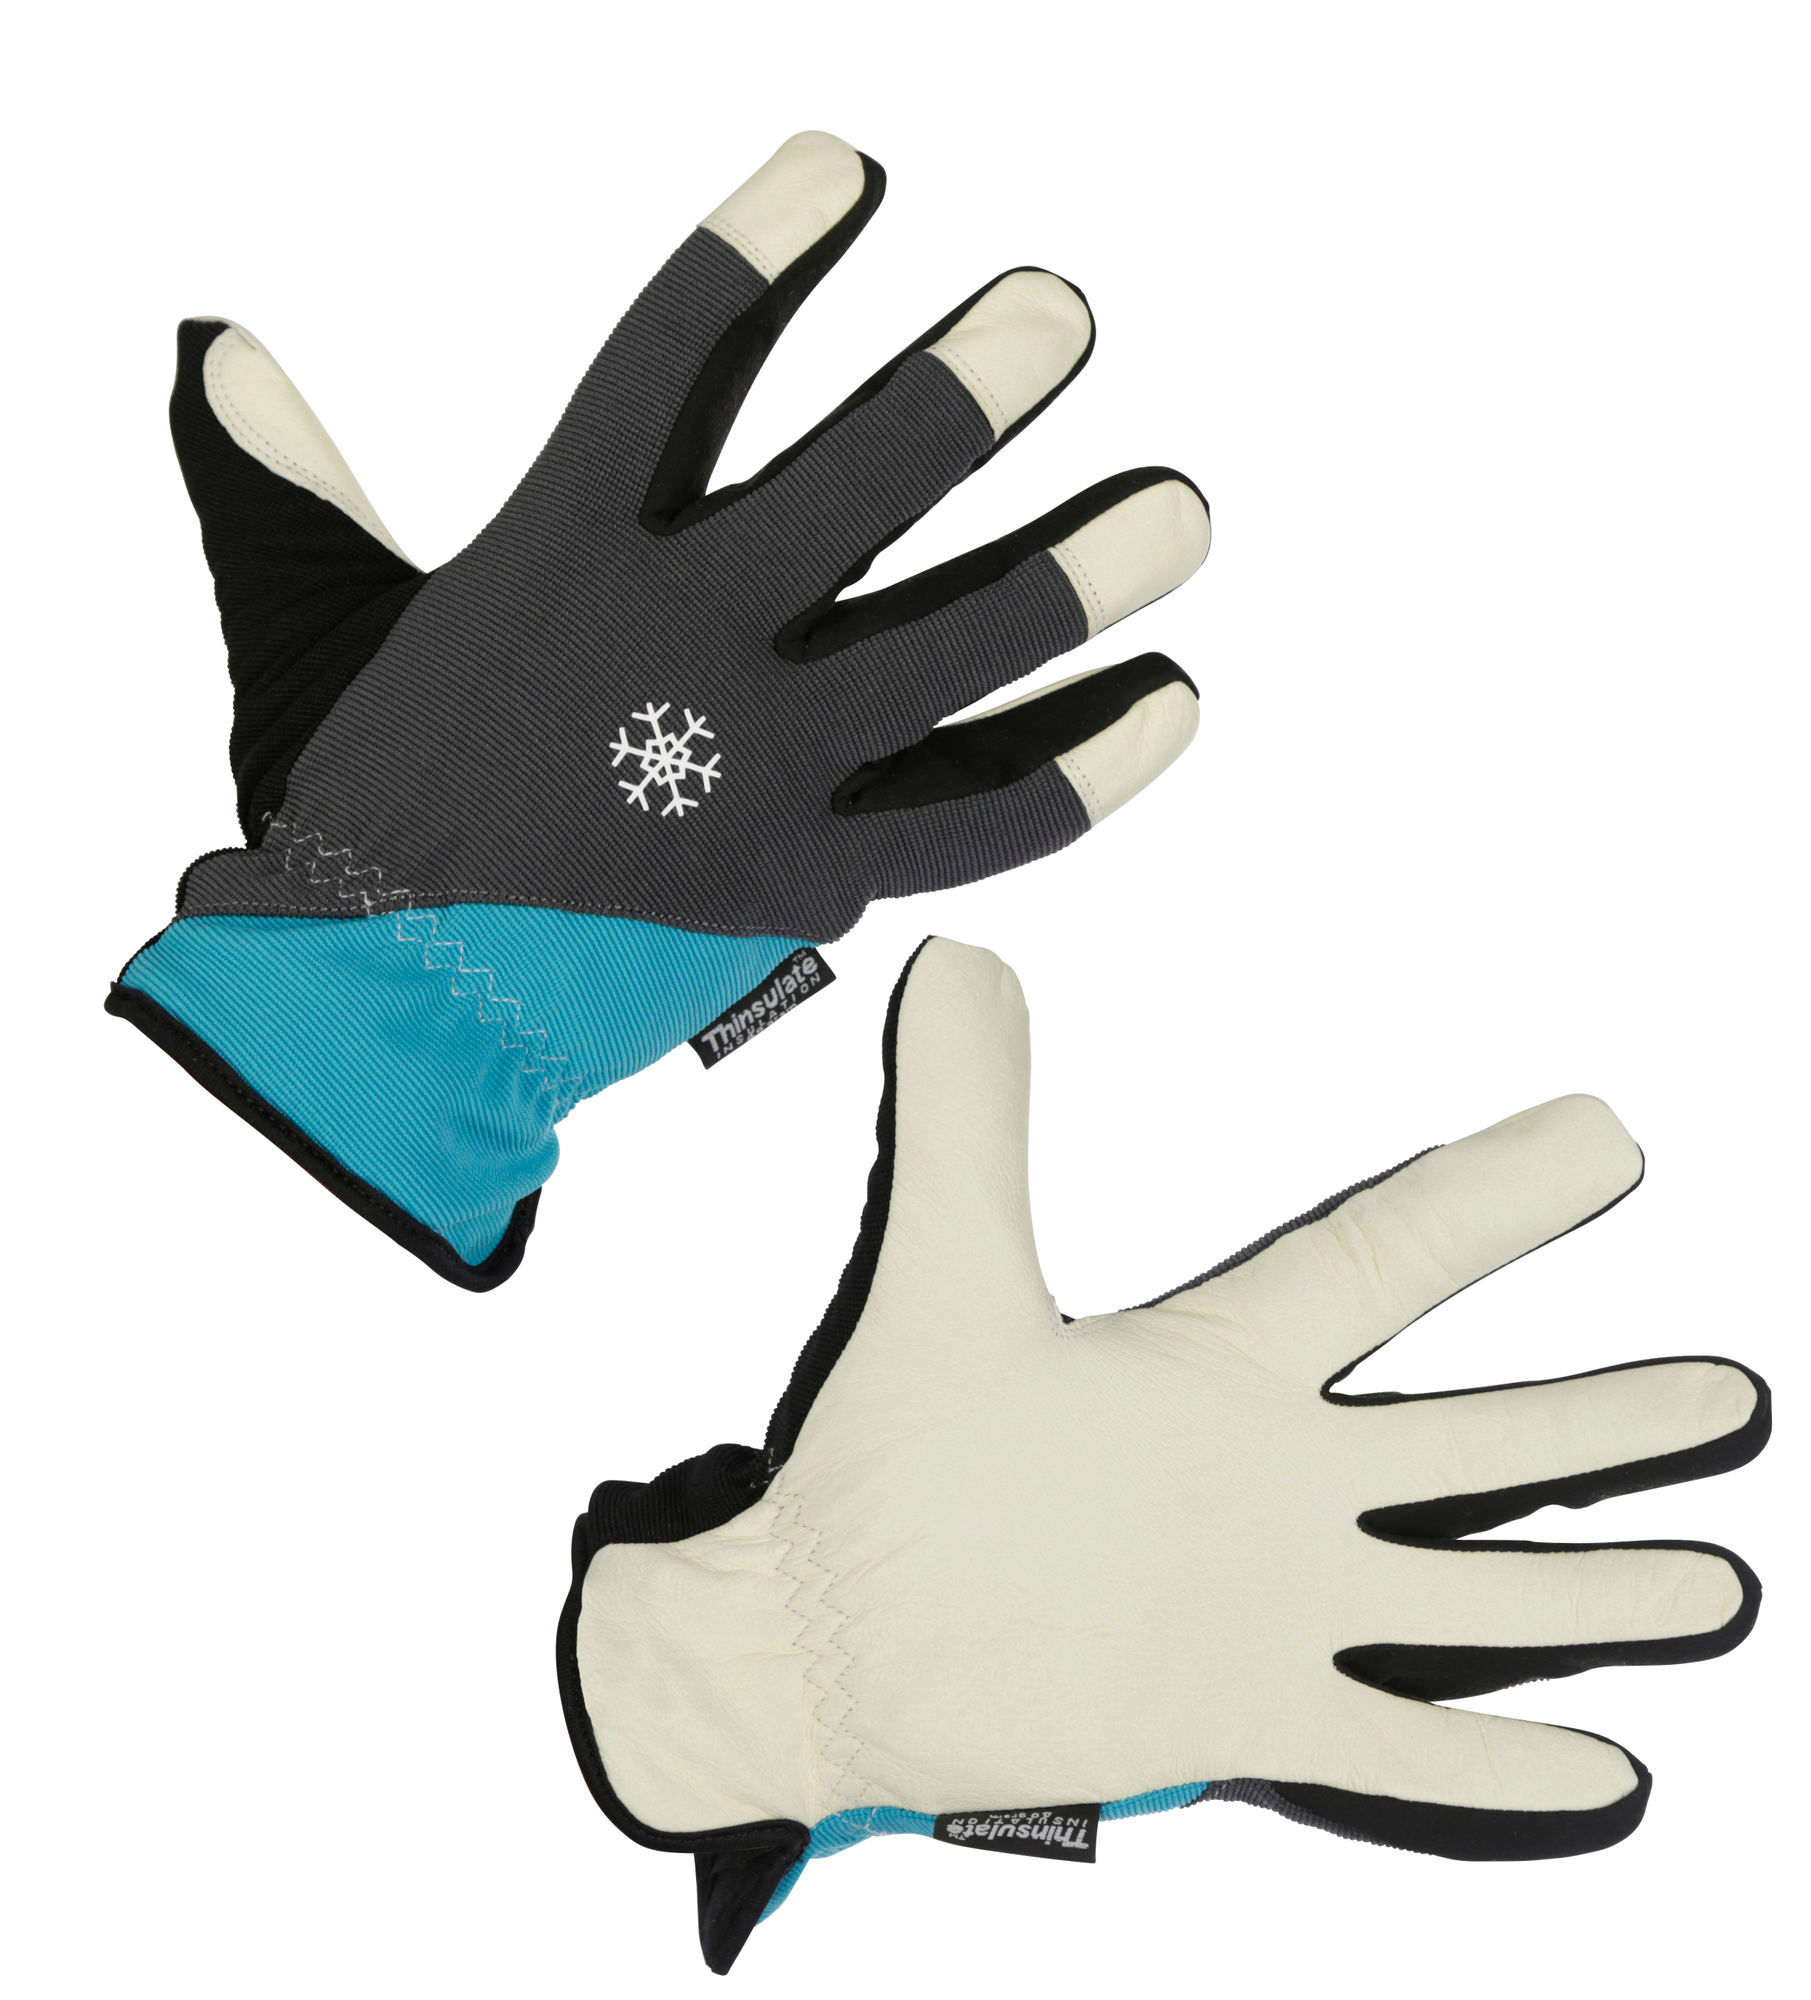 Gants d'hiver Polartex II turquoise/gris, taille 11/XXL Gants de travail -  AGZ000557777